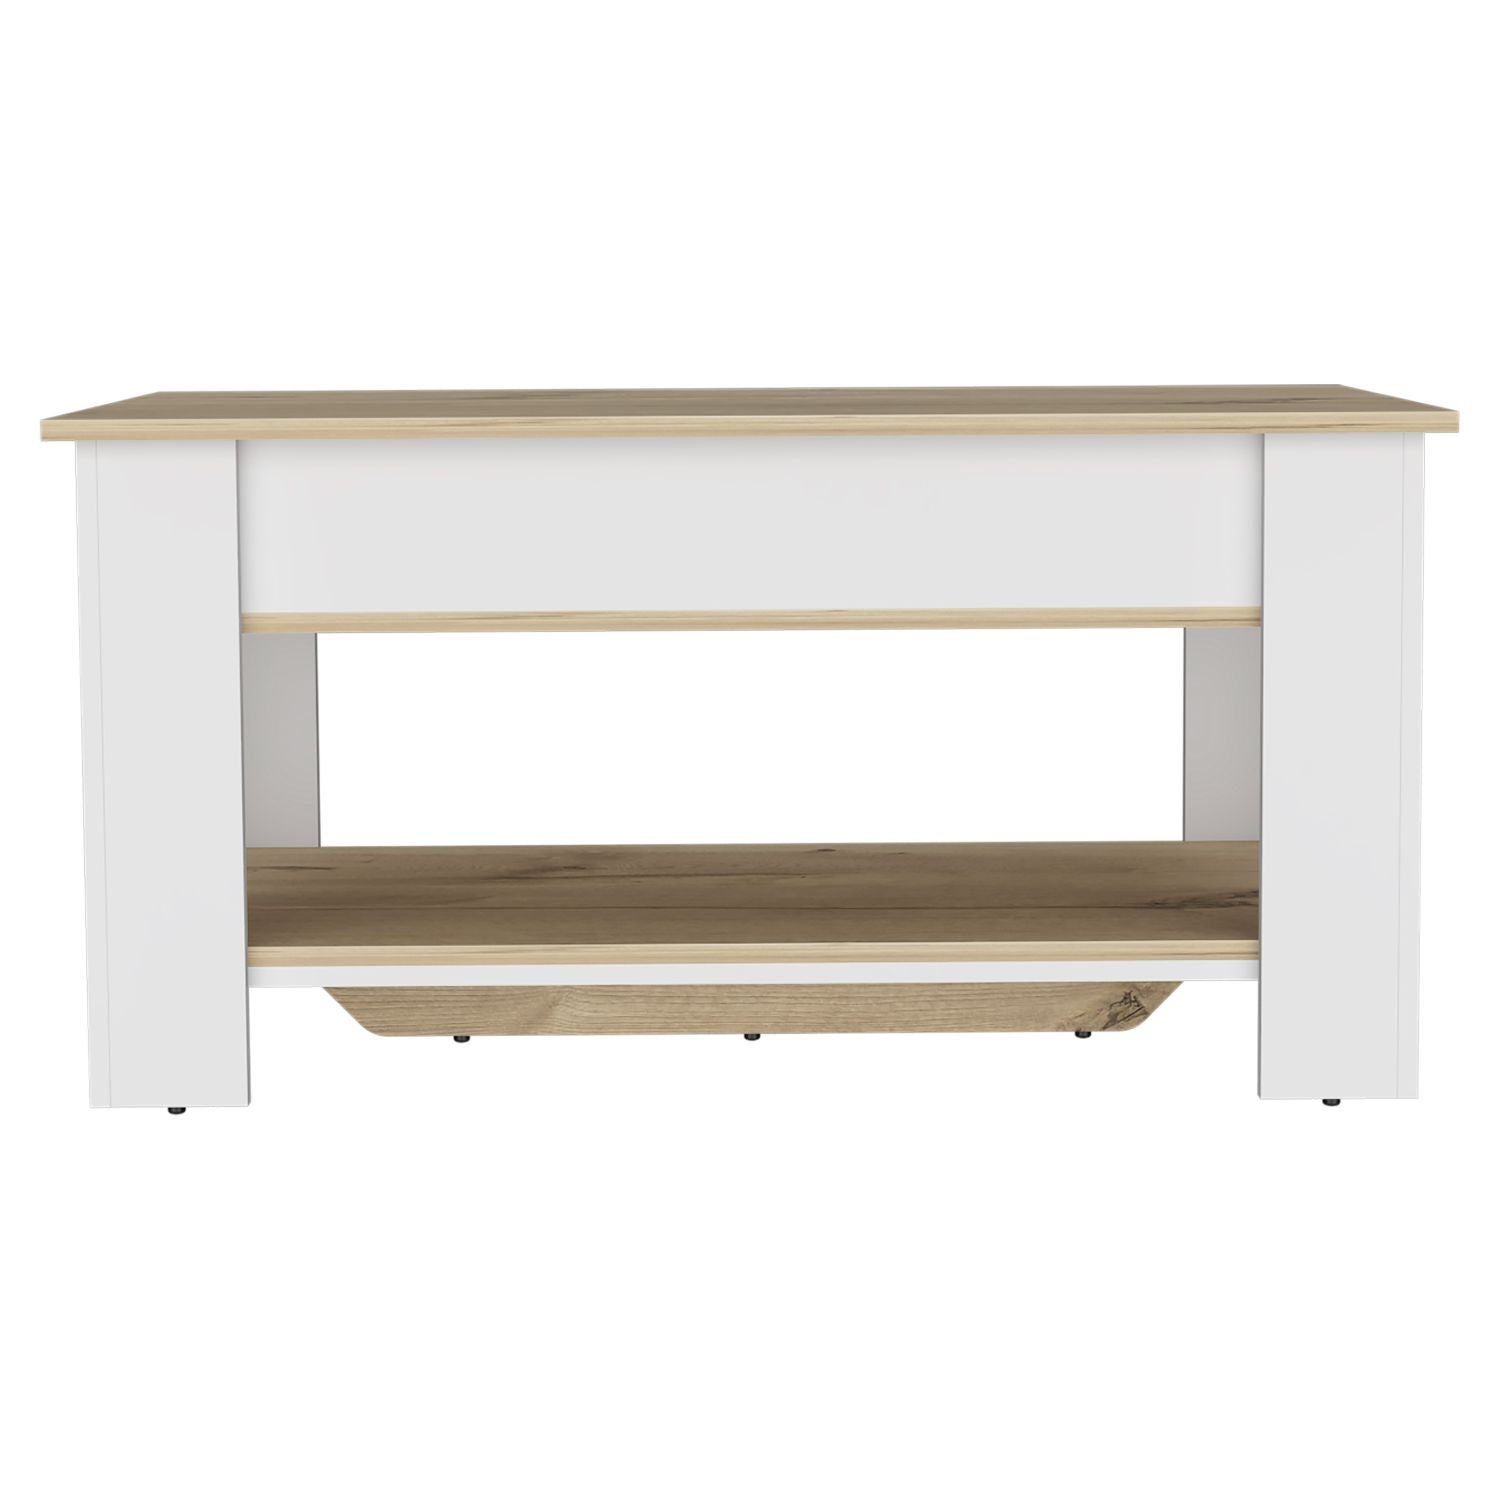 Storage Table Polgon, Extendable Table Shelf, Lower Shelf, Light Oak / White Finish-4